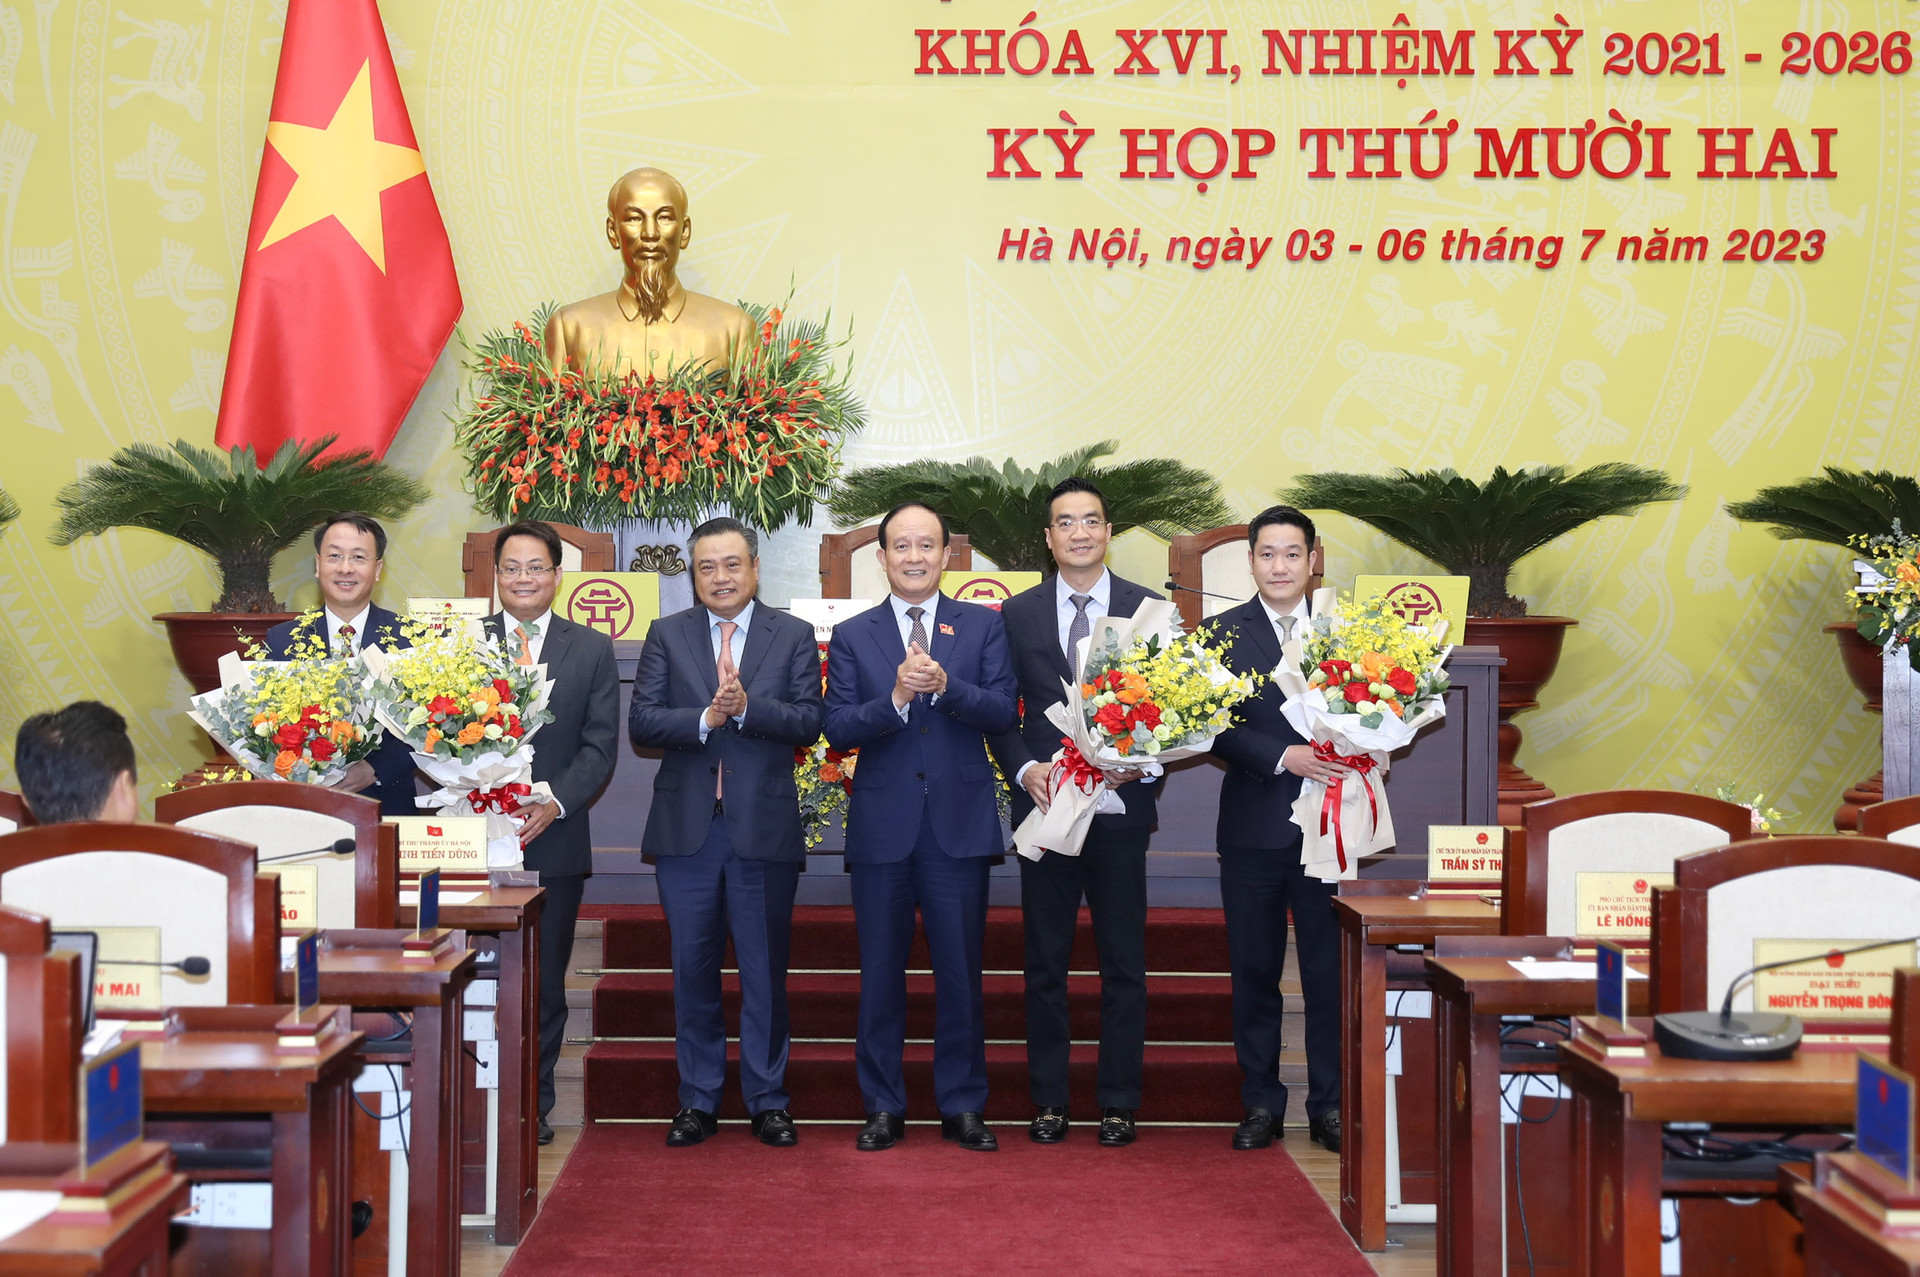 4 giám đốc sở Hà Nội thêm chức mới - Ảnh 1.